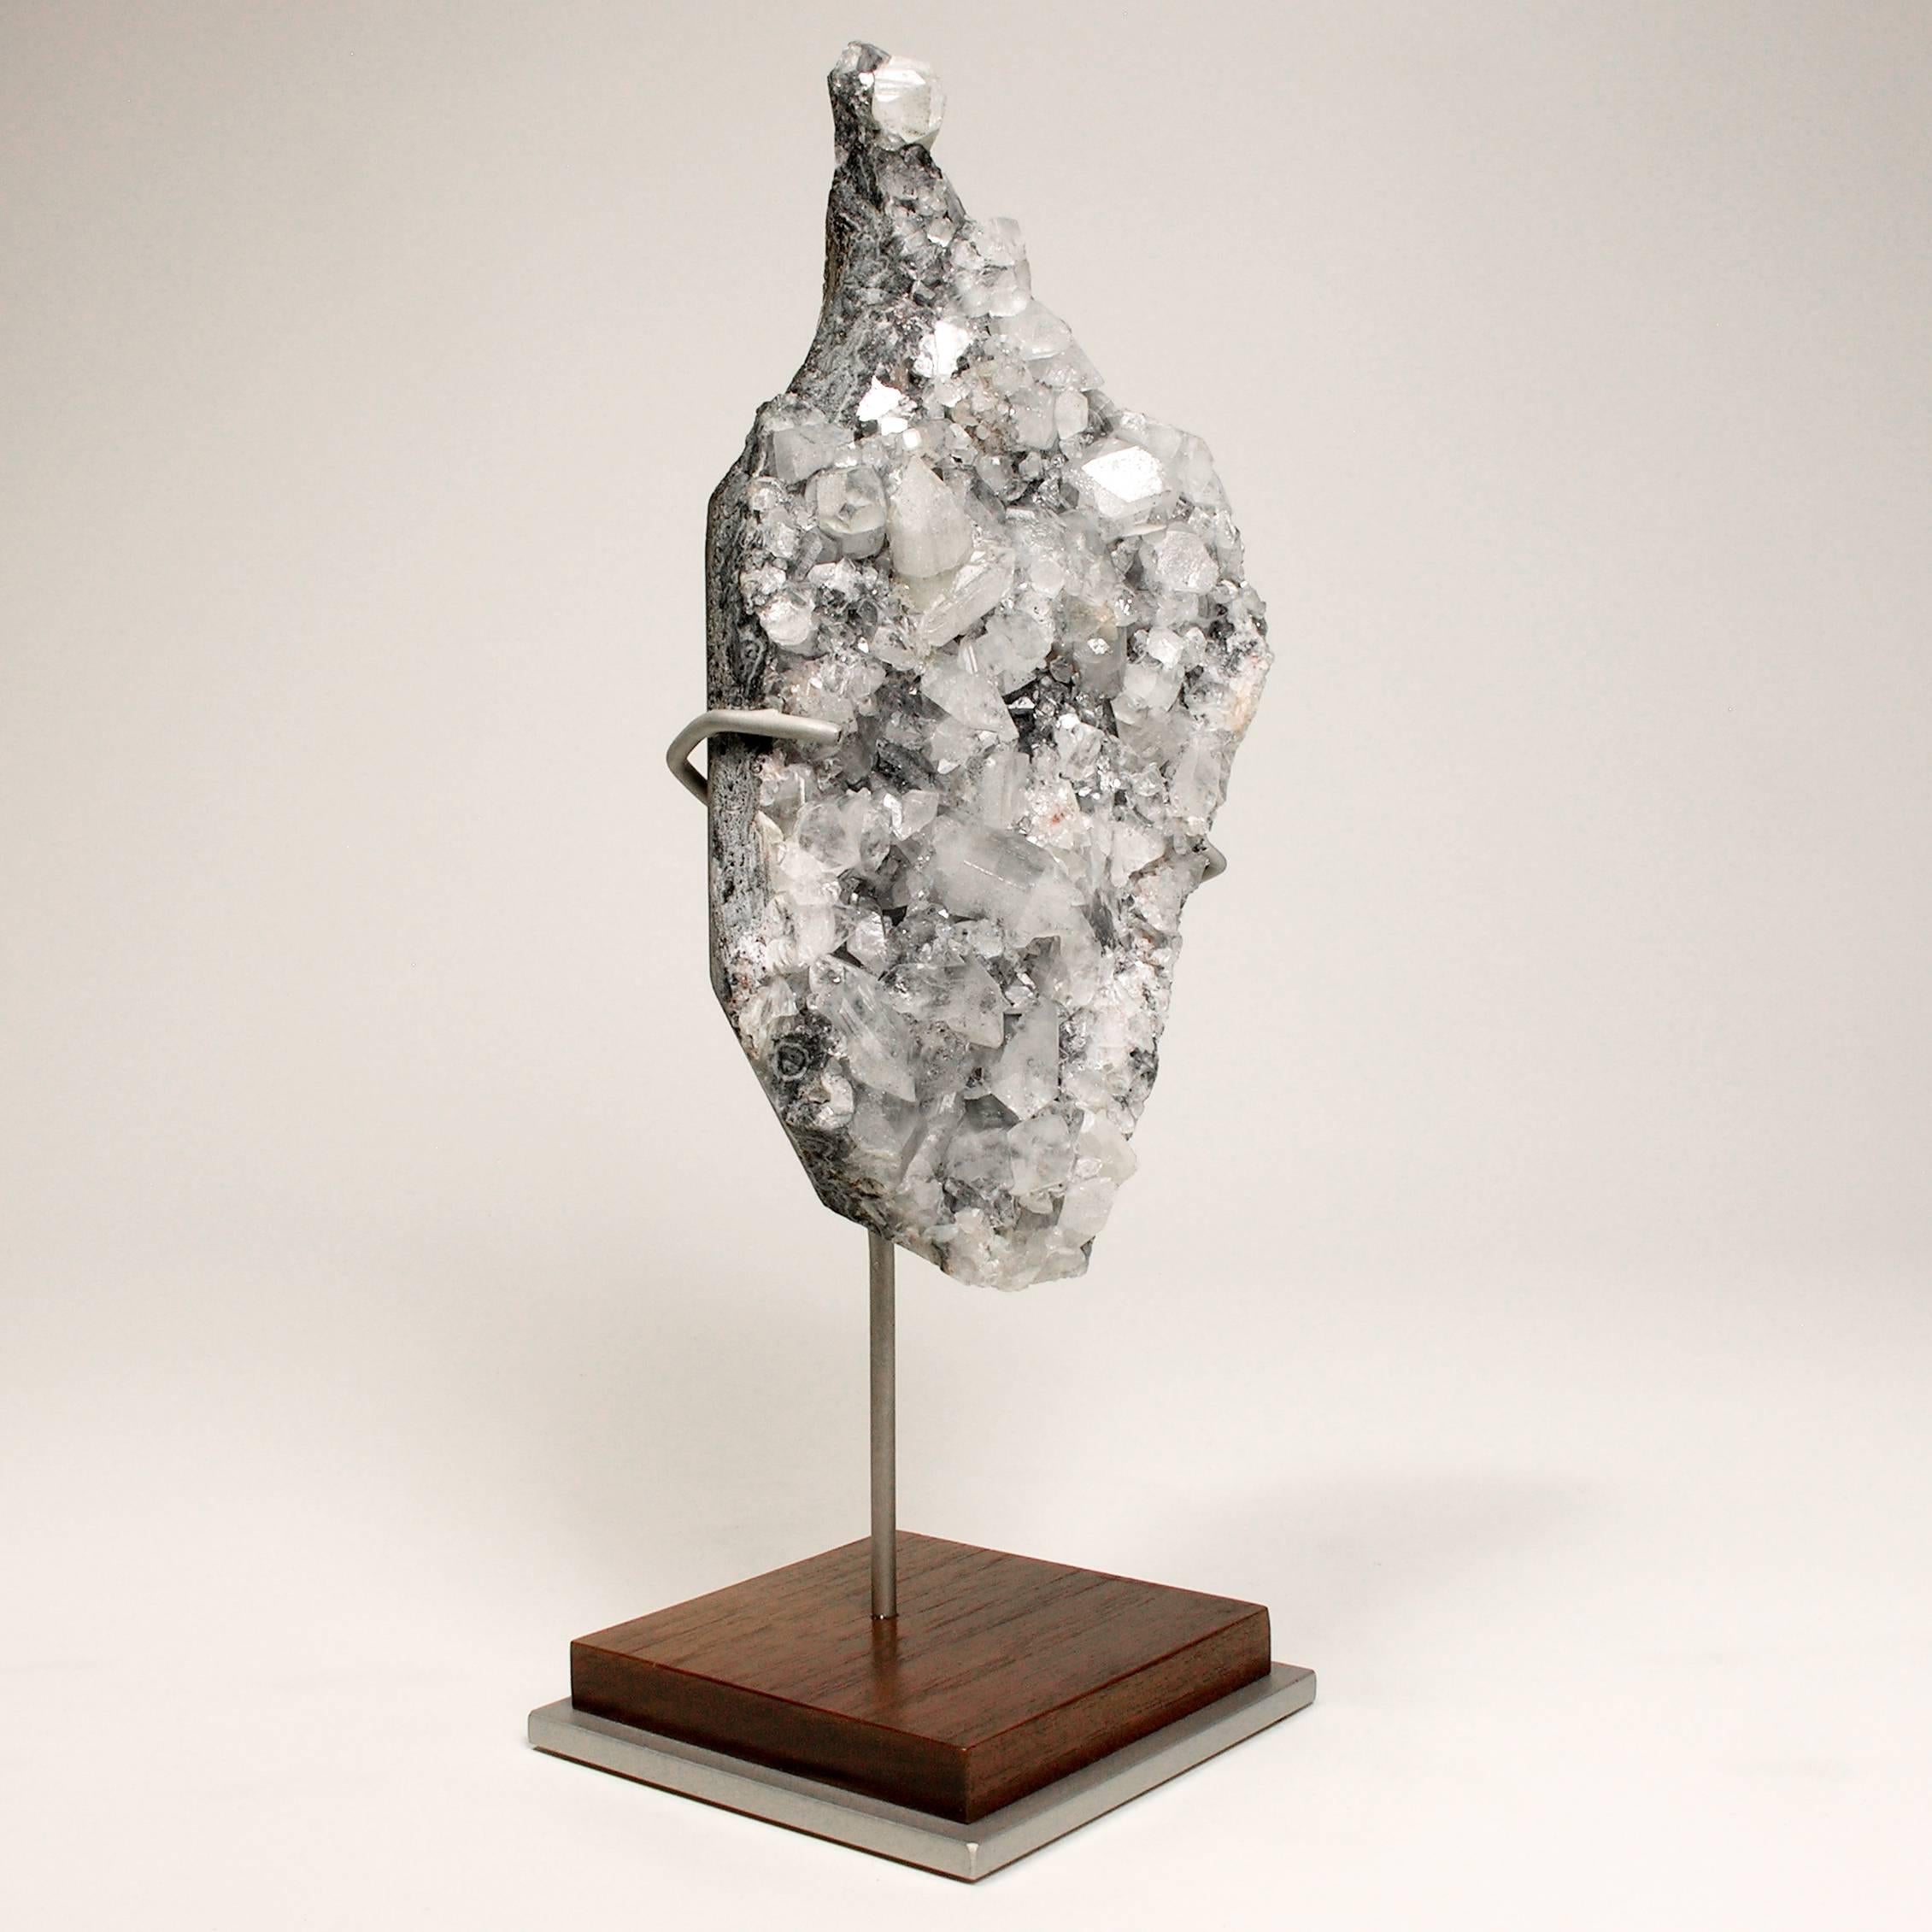 Indian Mineral Specimen Sculpture Apophyllite Grown on a Crystal Base